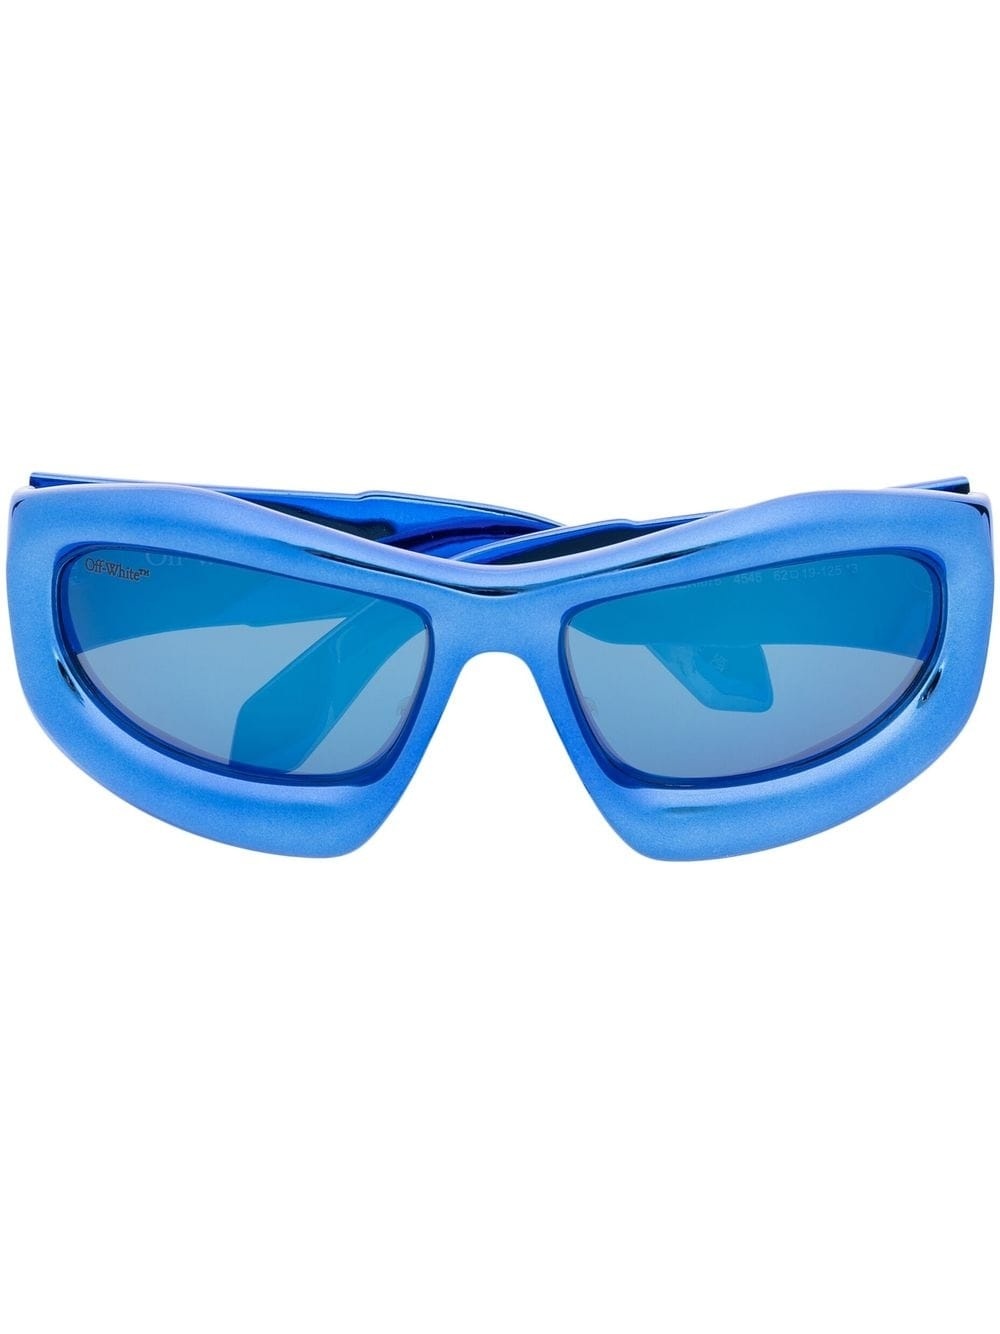 Katoka square-frame sunglasses - 1